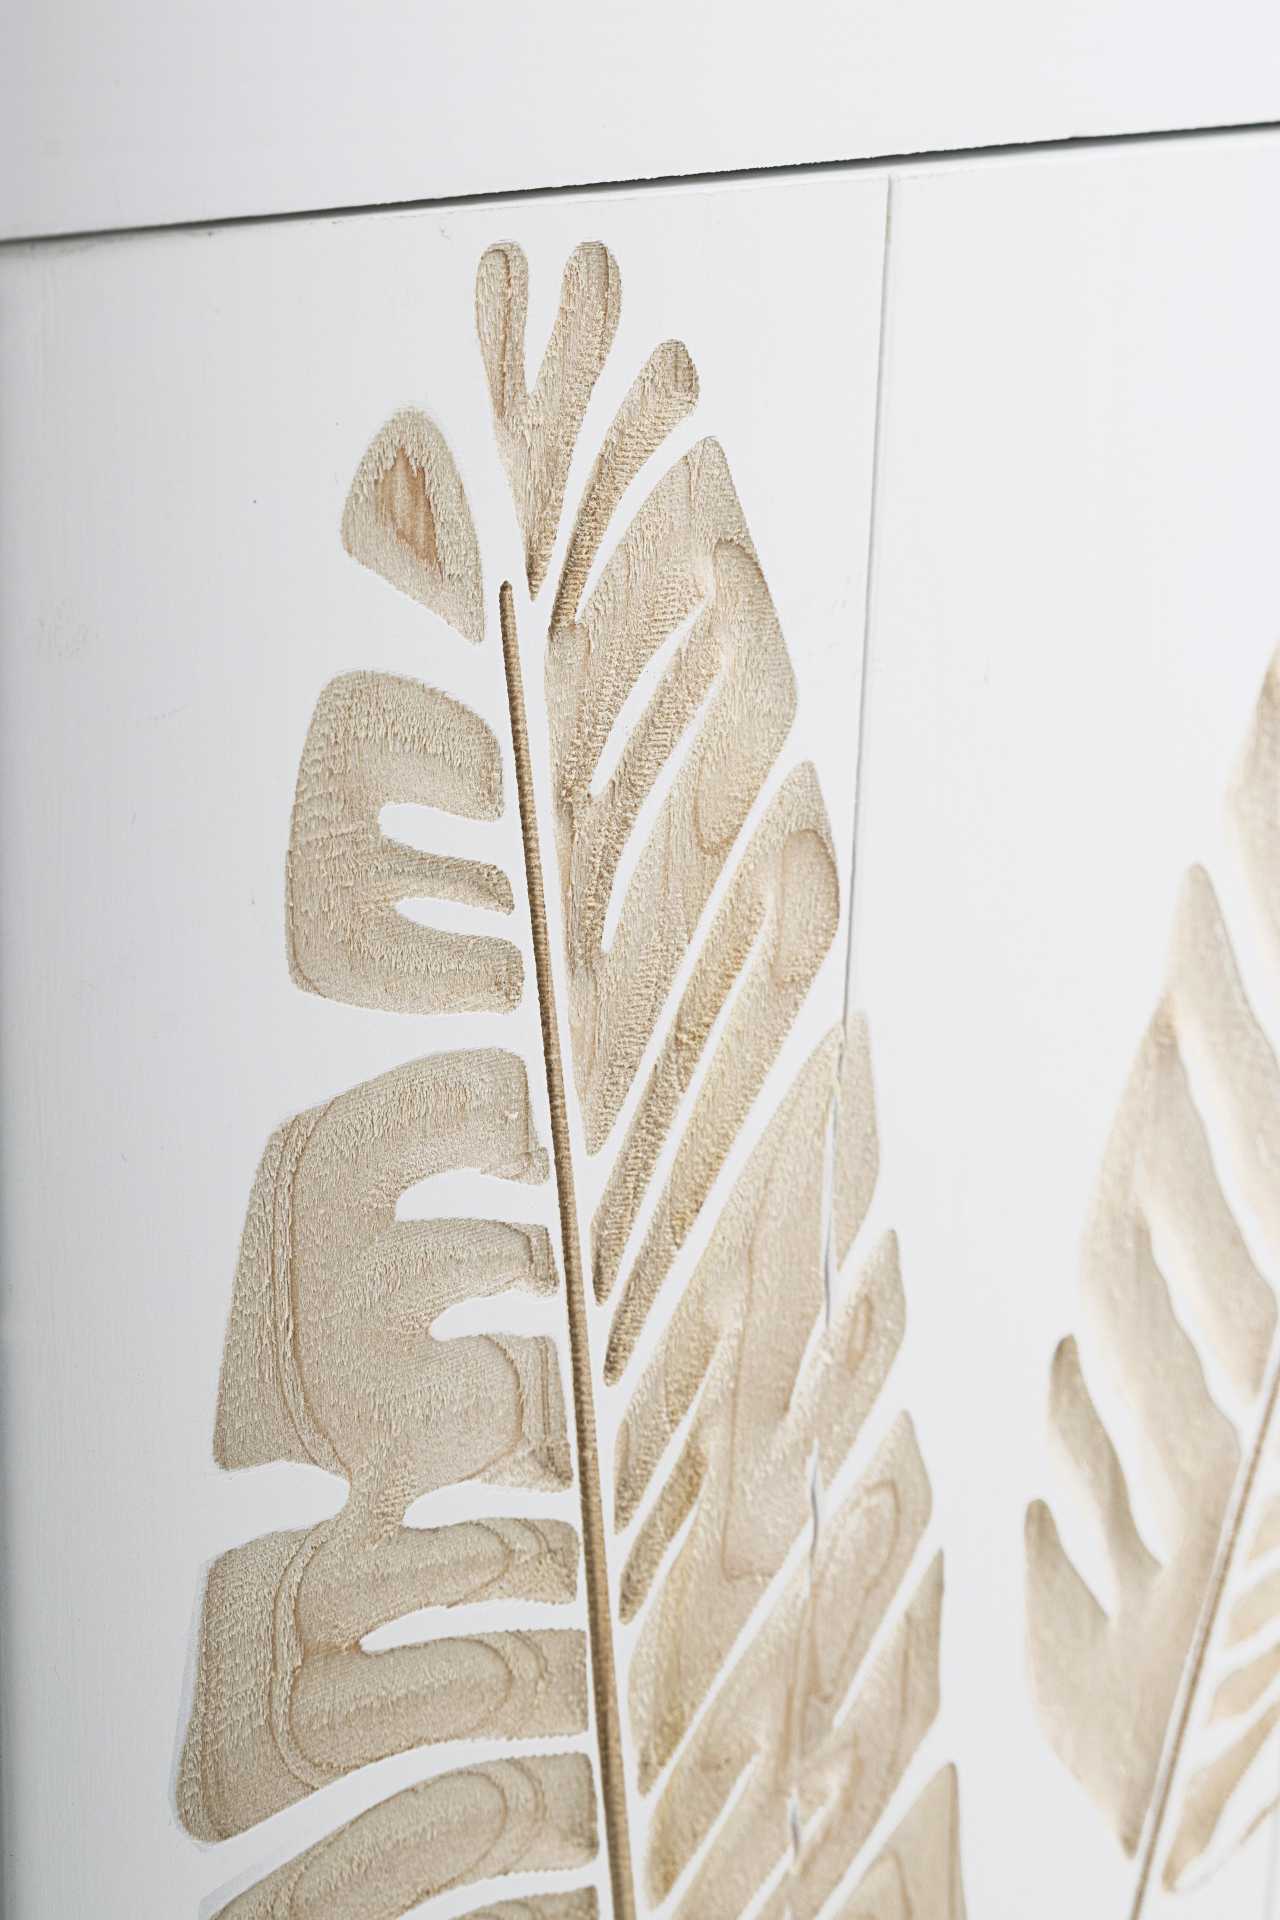 Die Kommode Folium überzeugt mit ihrem klassischen Design. Gefertigt wurde sie aus Tannen-Holz, welches einen weißen Farbton besitzt. Das Gestell ist auch aus Tannen-Holz und hat eine natürliche Farbe. Die Kommode verfügt über zwei Türen und vier Schublad